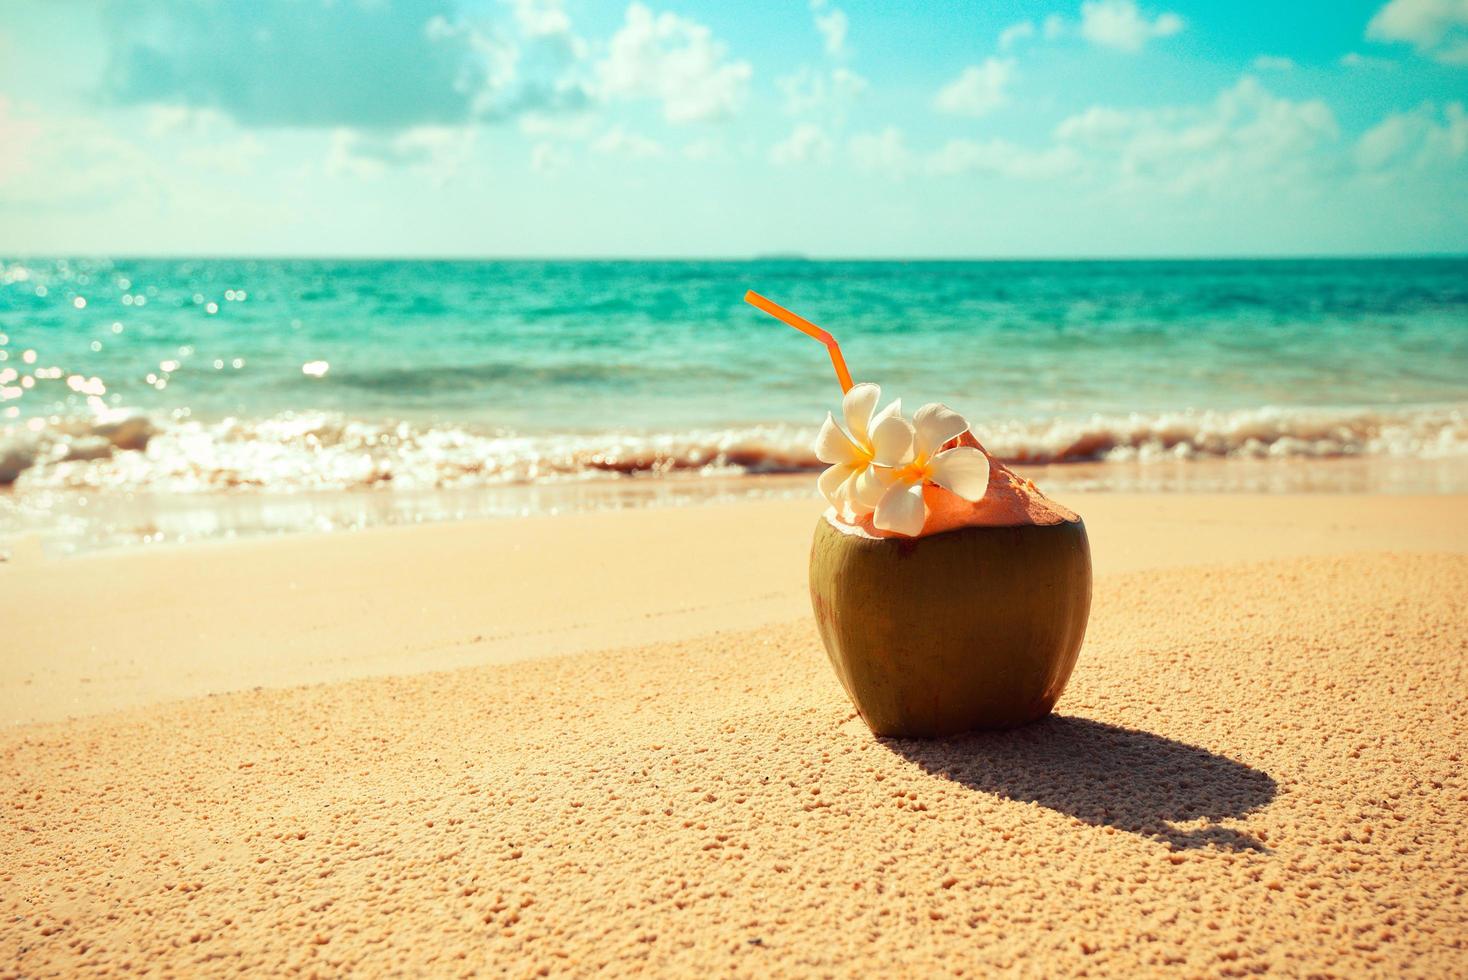 frischer Kokosnusssaft Sommer mit Blume am Strand Meer bei heißem Wetter Ozean Landschaft Natur Urlaub im Freien, junge Kokosnuss tropische Frucht am Sandstrand Hintergrund Wasser foto